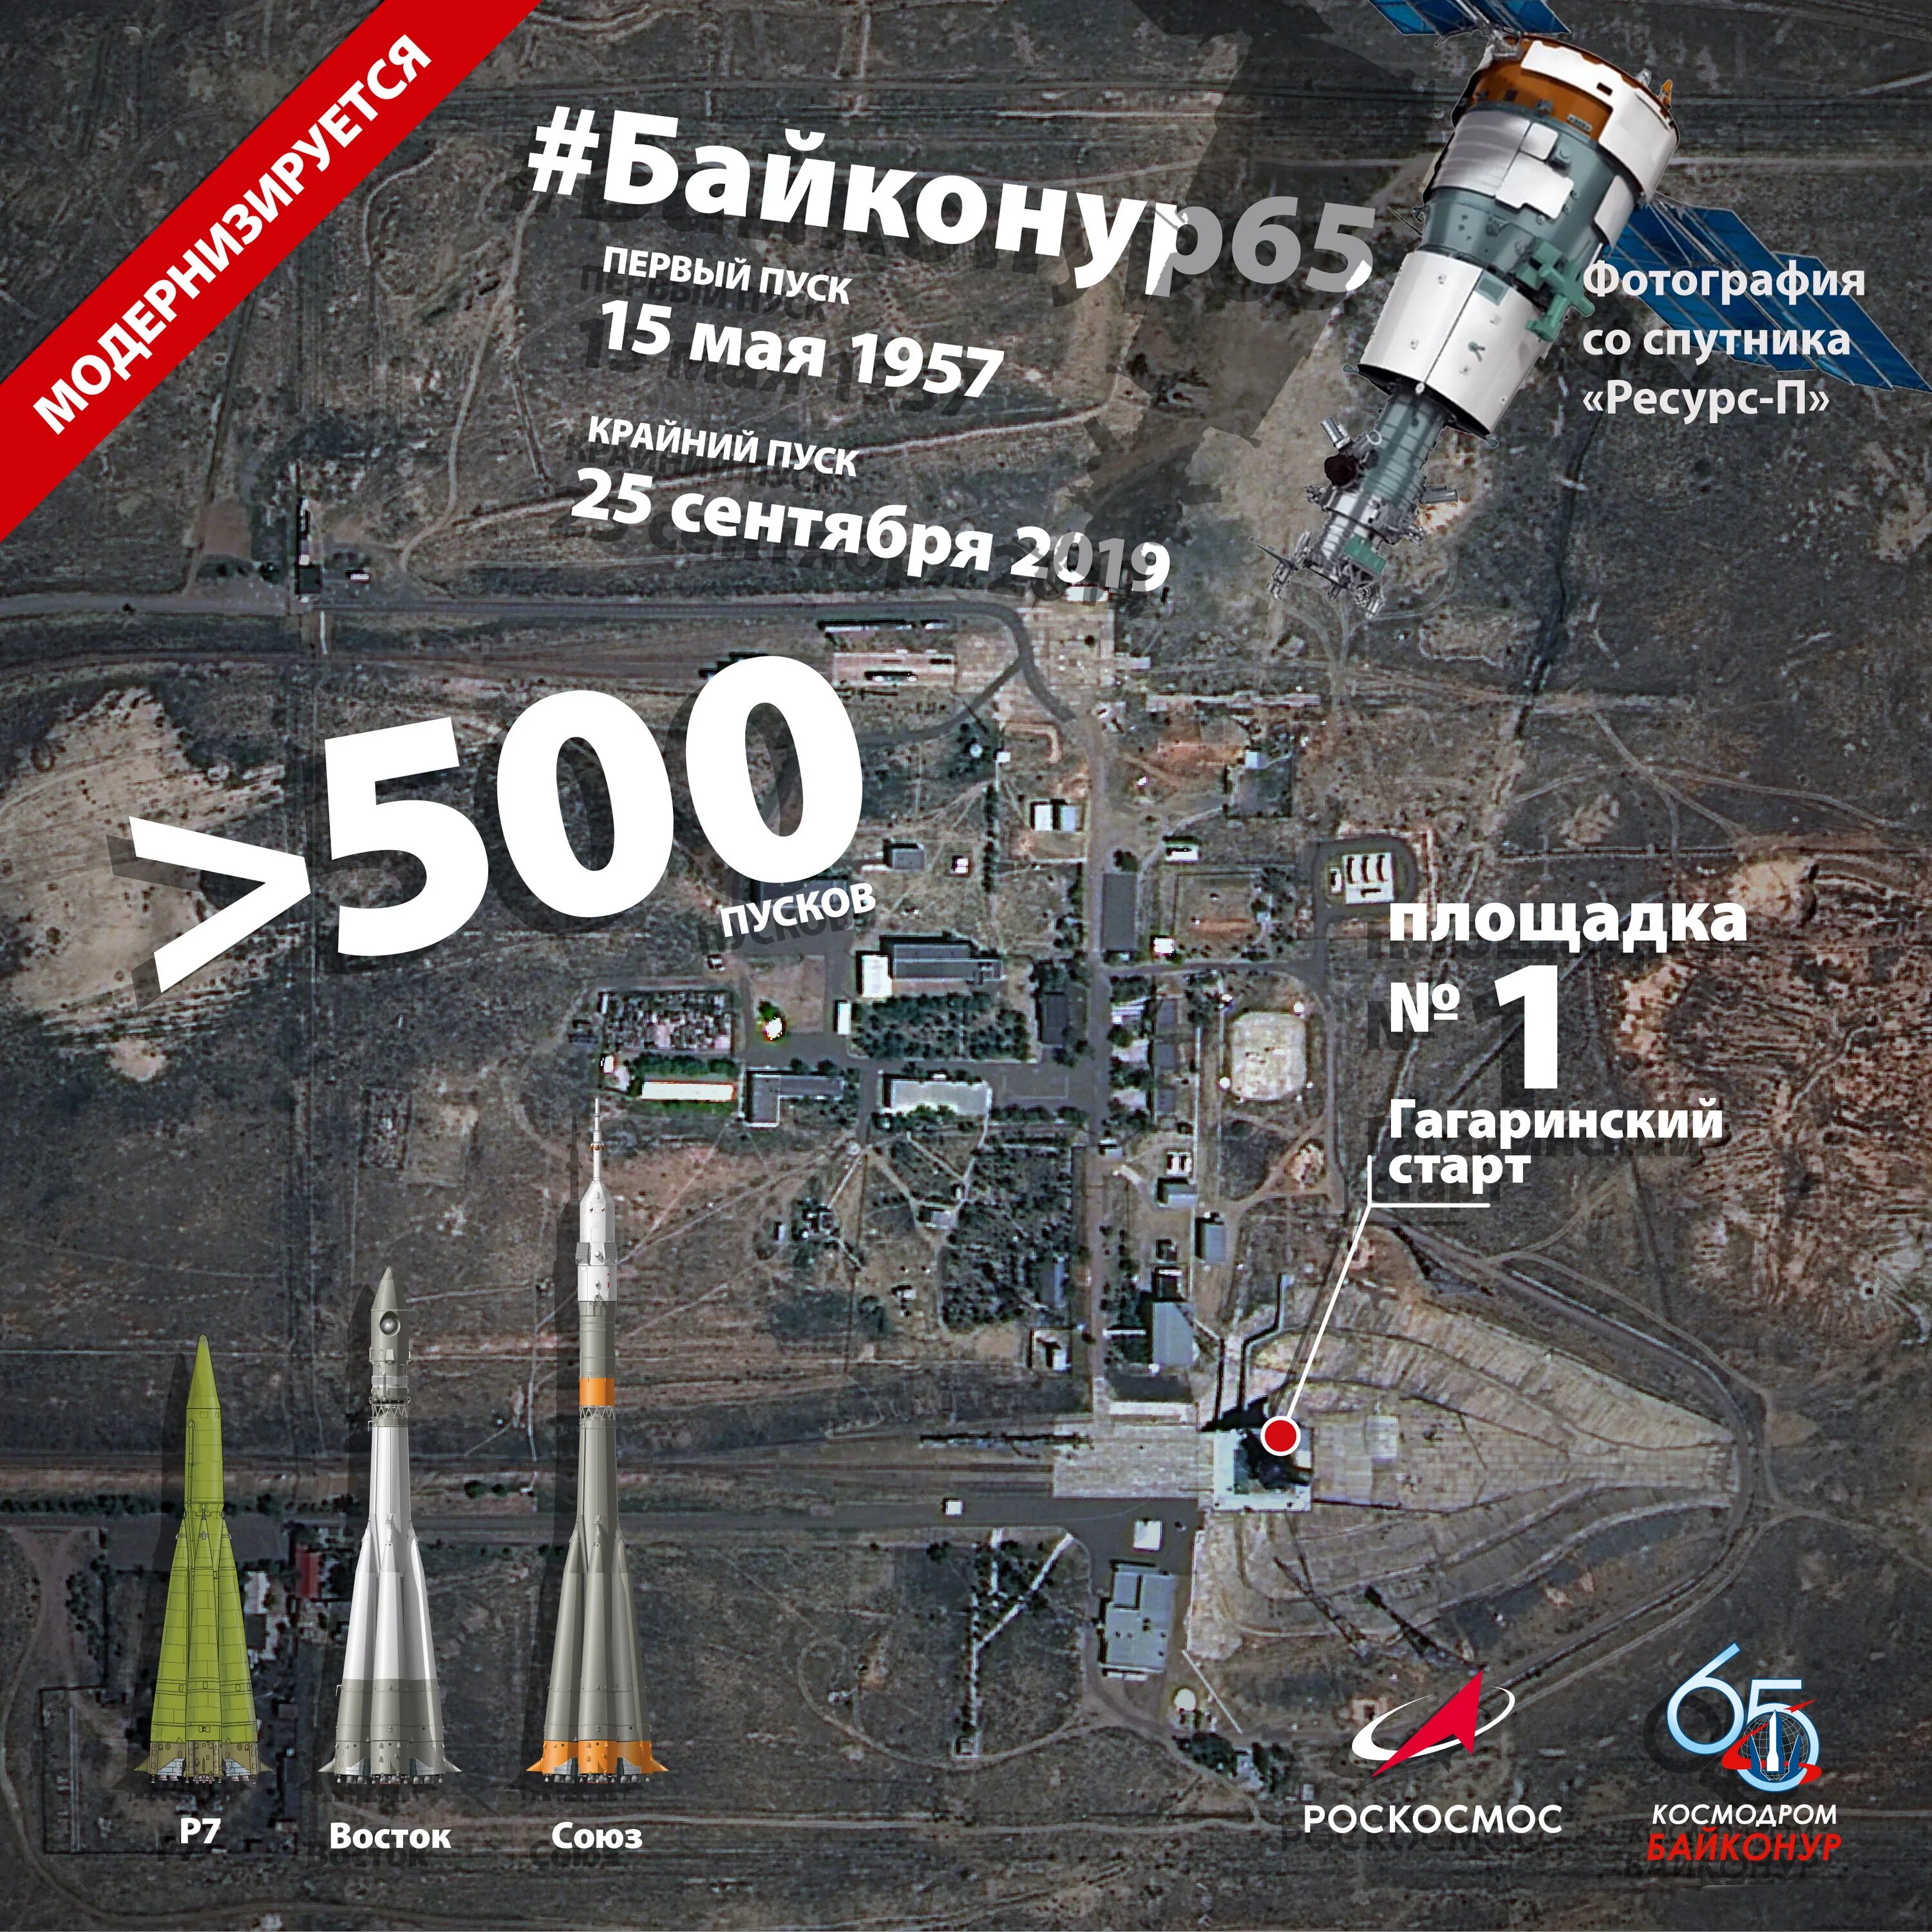 В россии расположены космодромы. Байконур Гагаринский старт площадка 1. Космодром Байконур площадка 1. Территория космодрома Байконур на карте. Гагаринский старт на космодроме Байконур на карте.